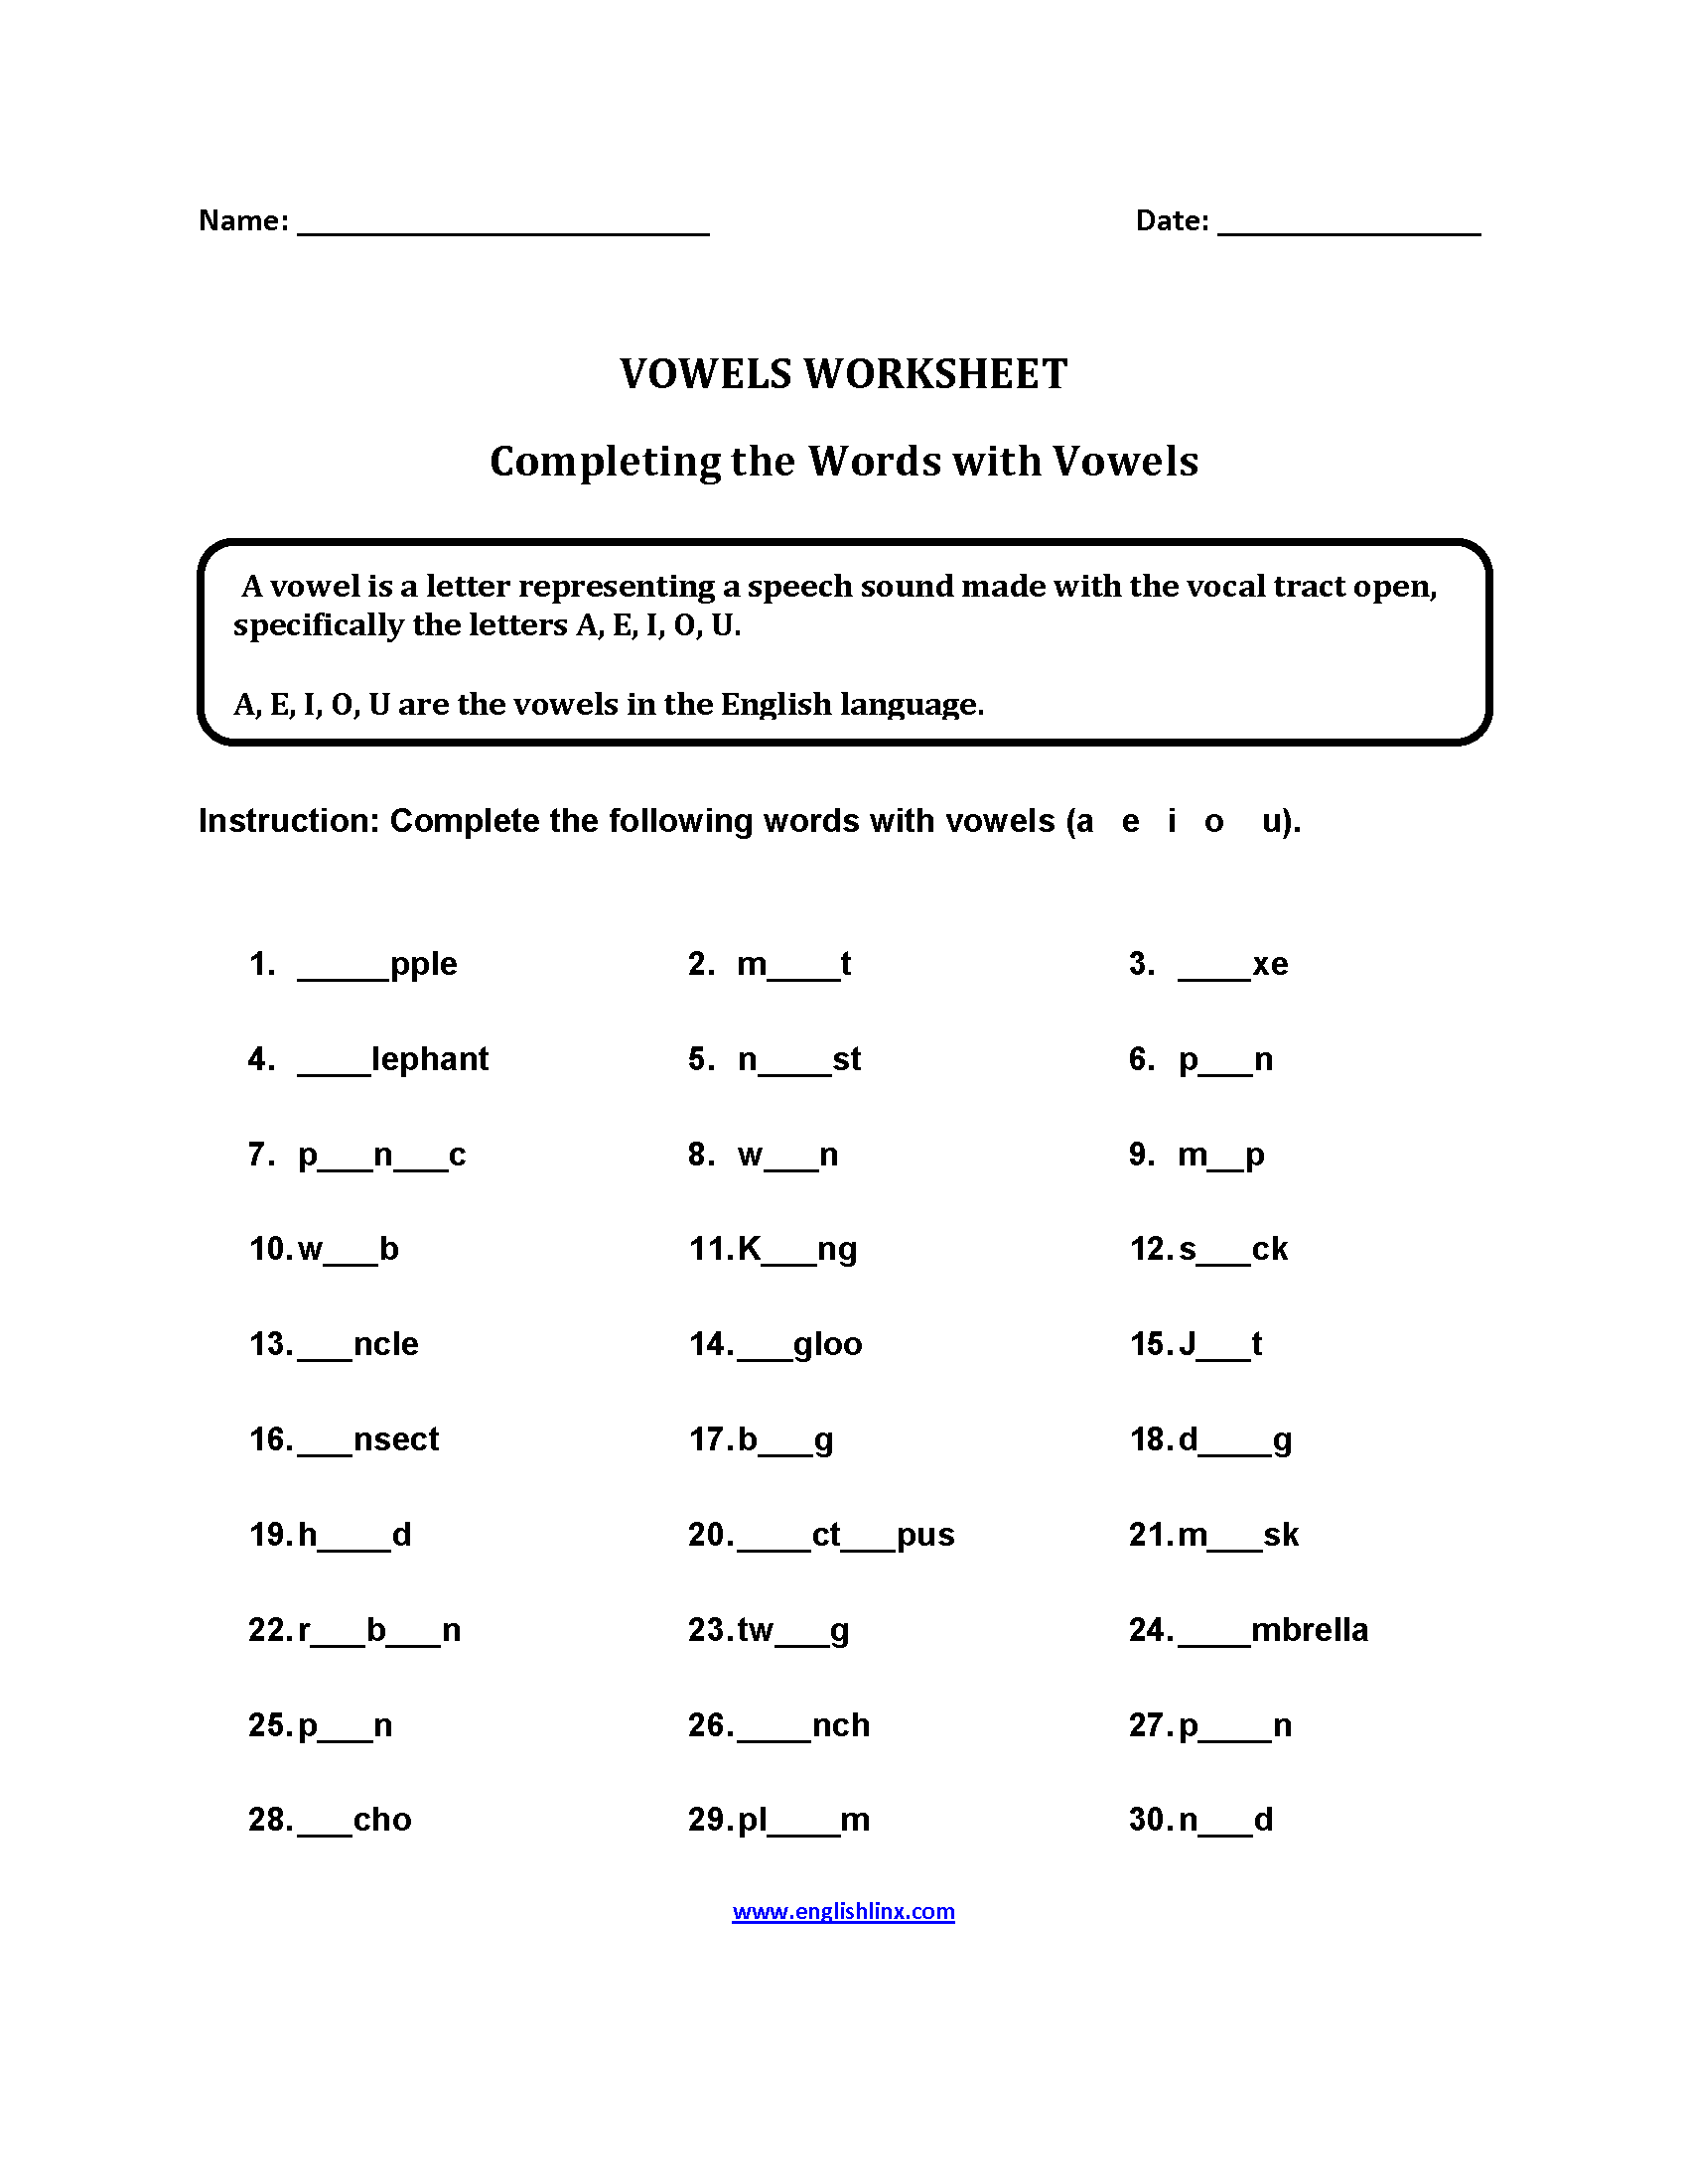 Vowels Worksheets | Completing Words Vowels Worksheets Part 2